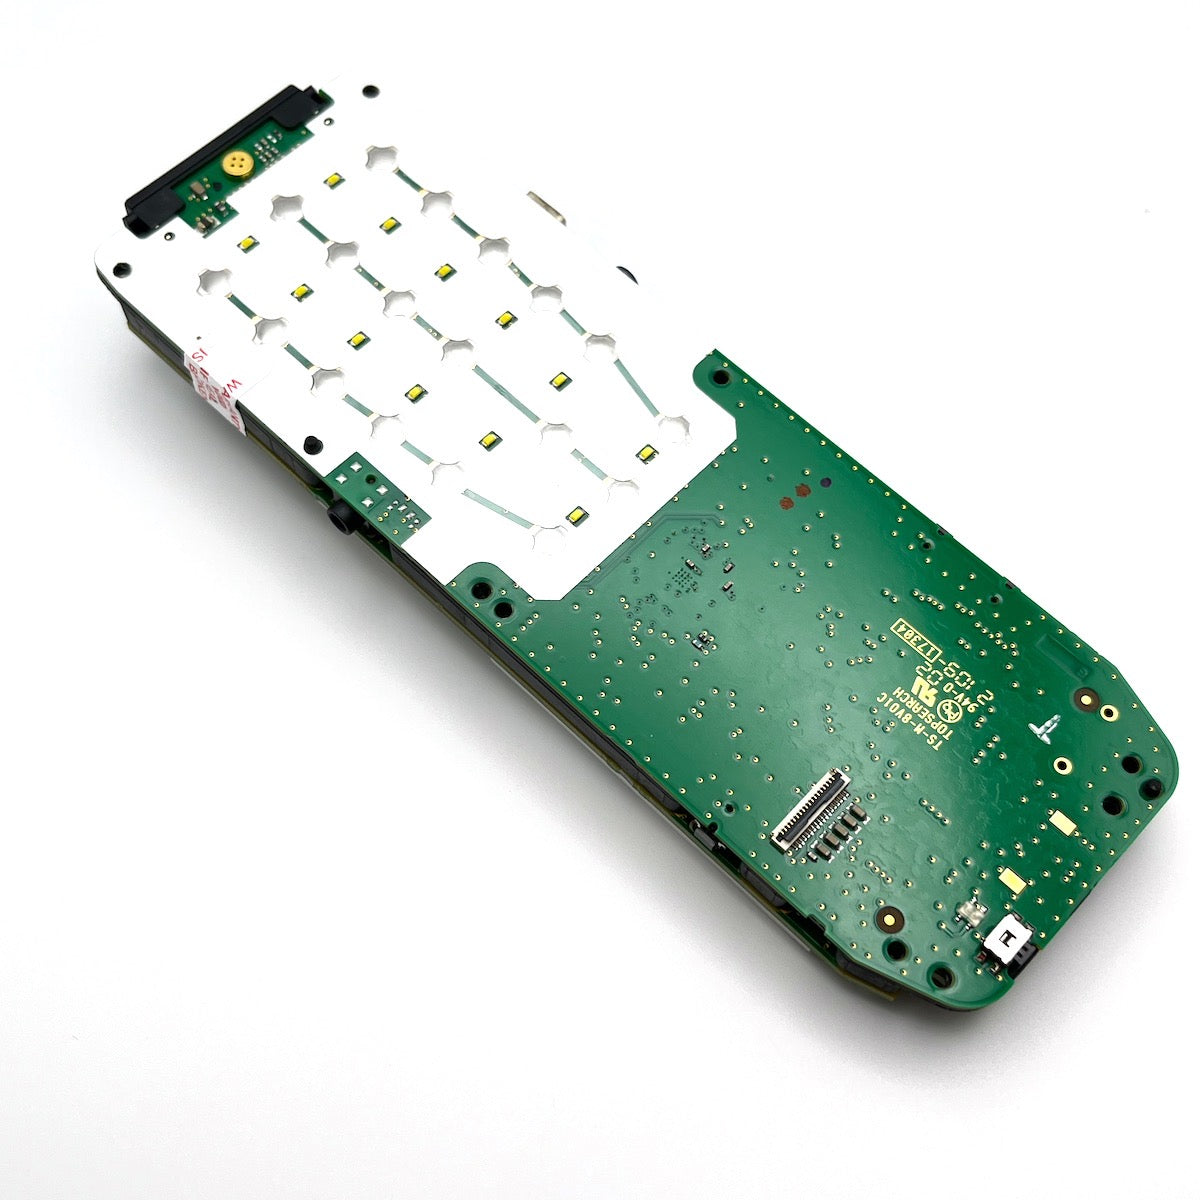 Maiboard PCB for Iridium 9555 genuine part repair sattelite phone